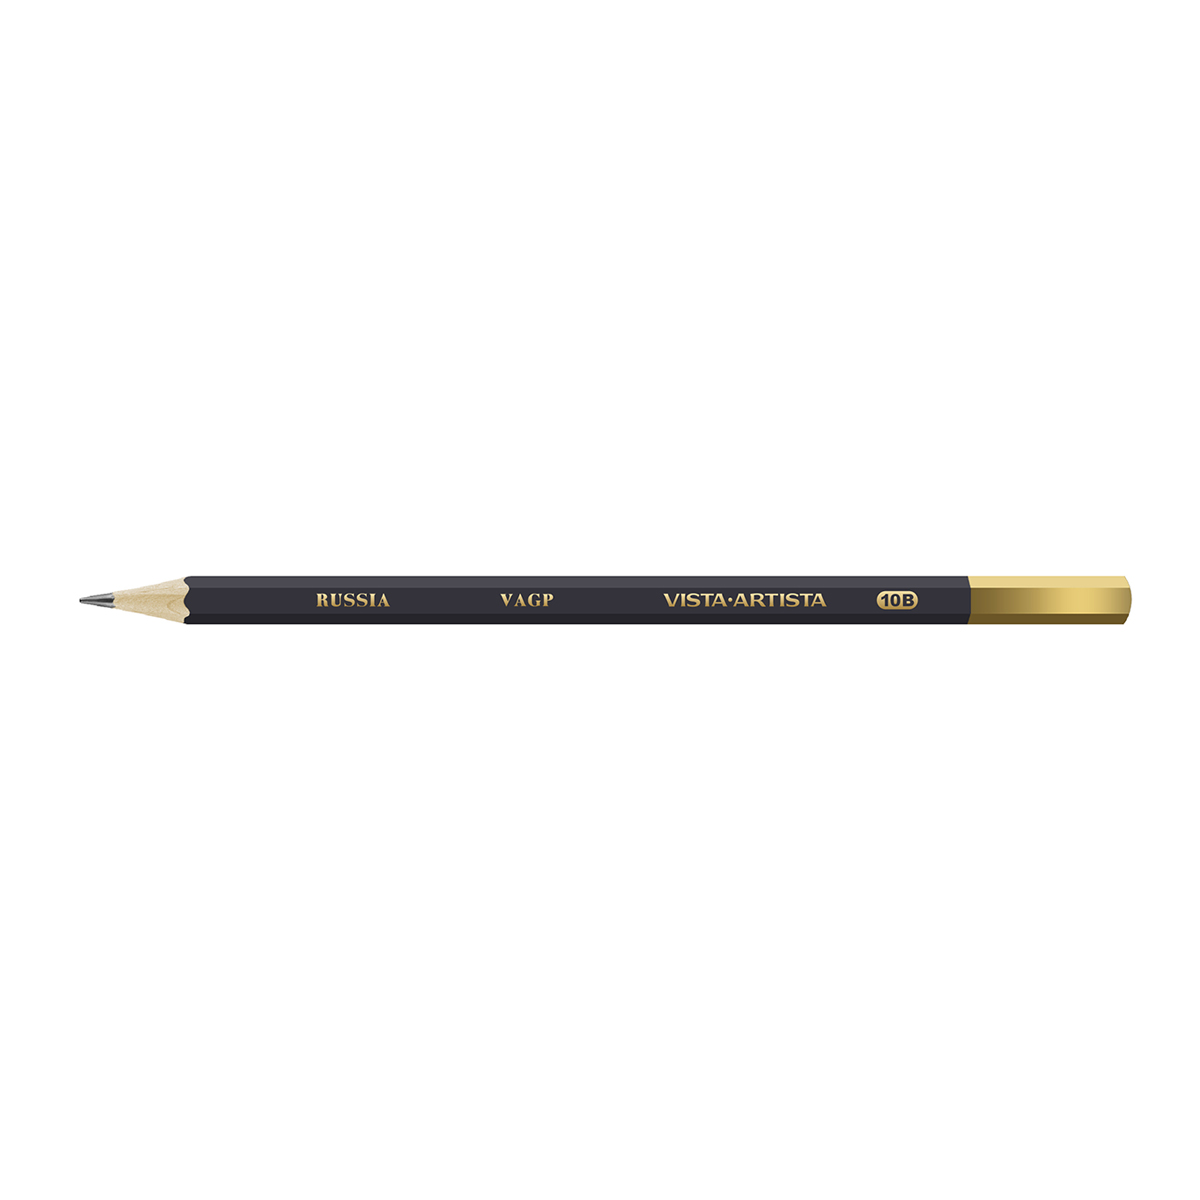 VISTA-ARTISTA VAGP Чернографитный карандаш заточенный 10М (10B) . Фото 1.